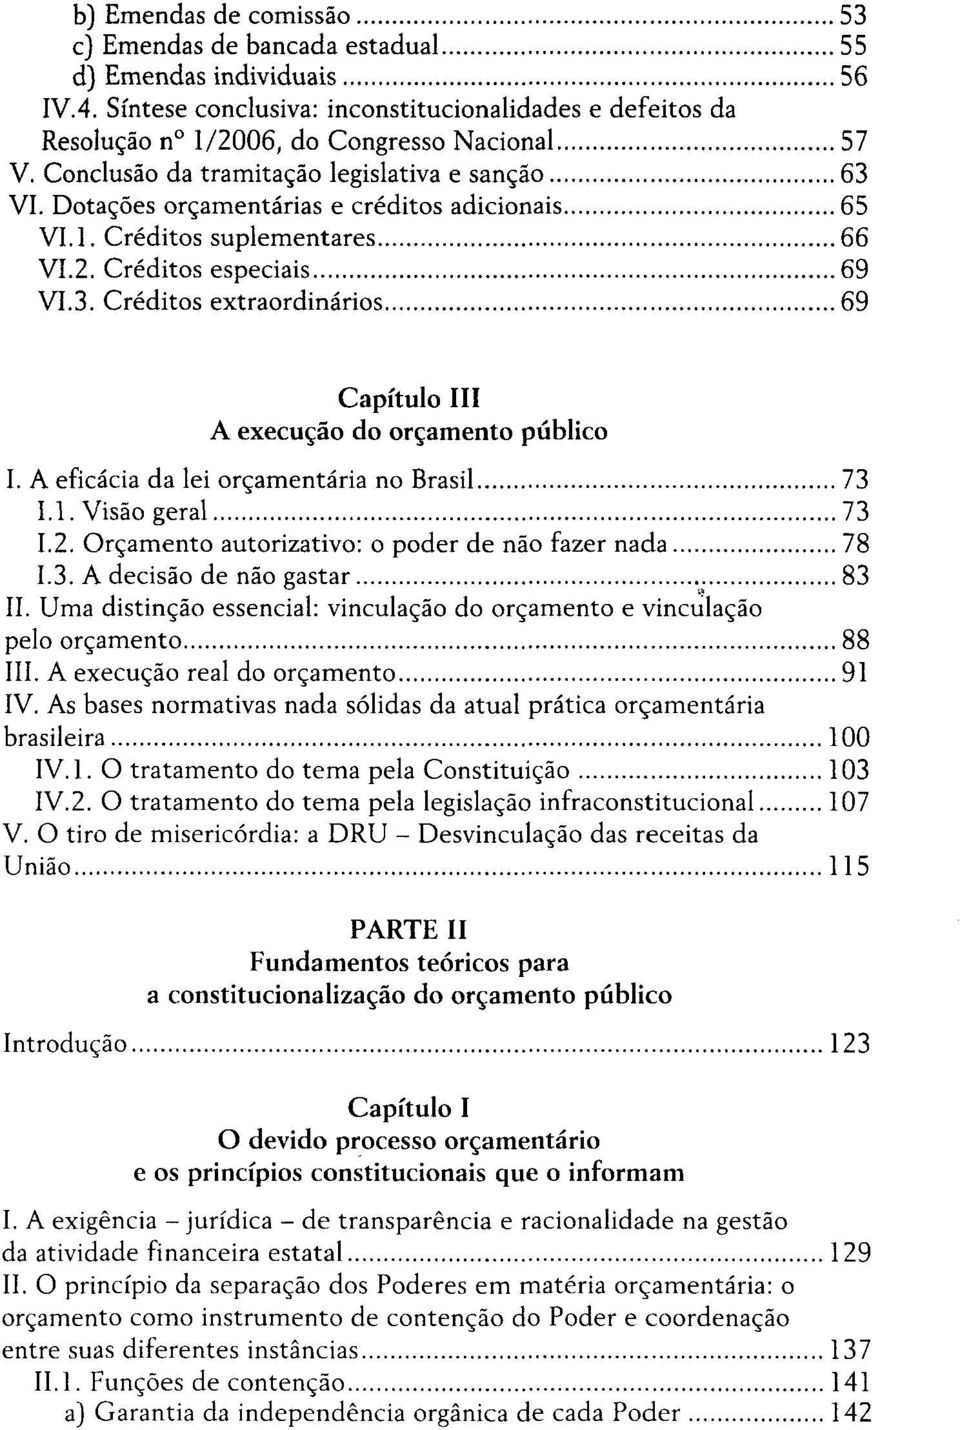 A eficácia da lei orçamentaria no Brasil 73 1.1. Visão geral 73 1.2. Orçamento autorizativo: o poder de não fazer nada 78 1.3. A decisão de não gastar 83 II.